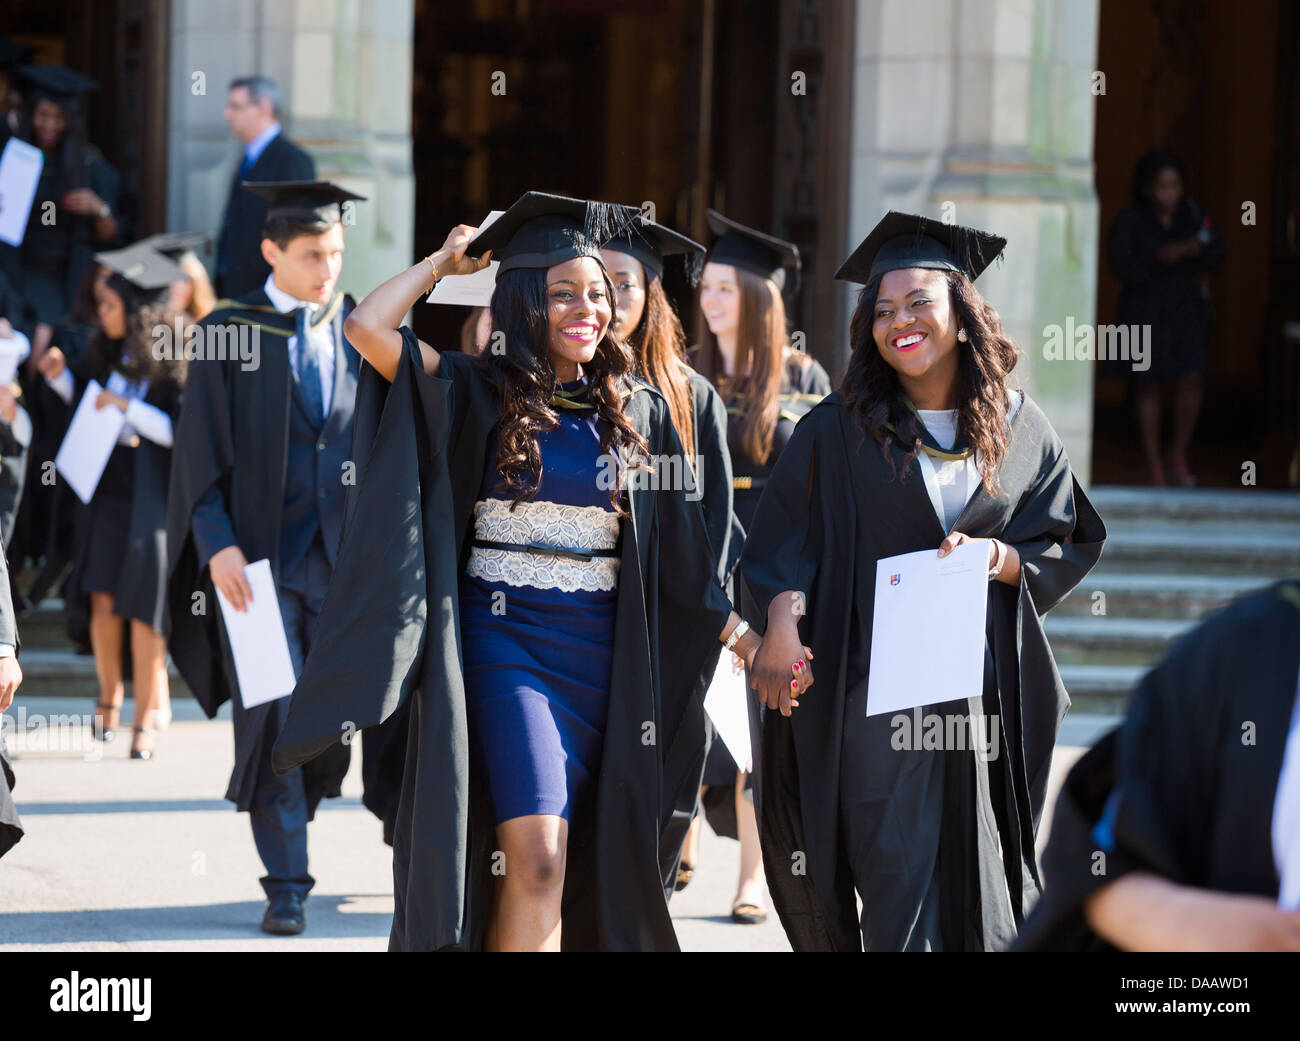 Absolventinnen und Absolventen verlassen die große Halle an der University of Birmingham, UK, nach der Abschlussfeier Stockfoto